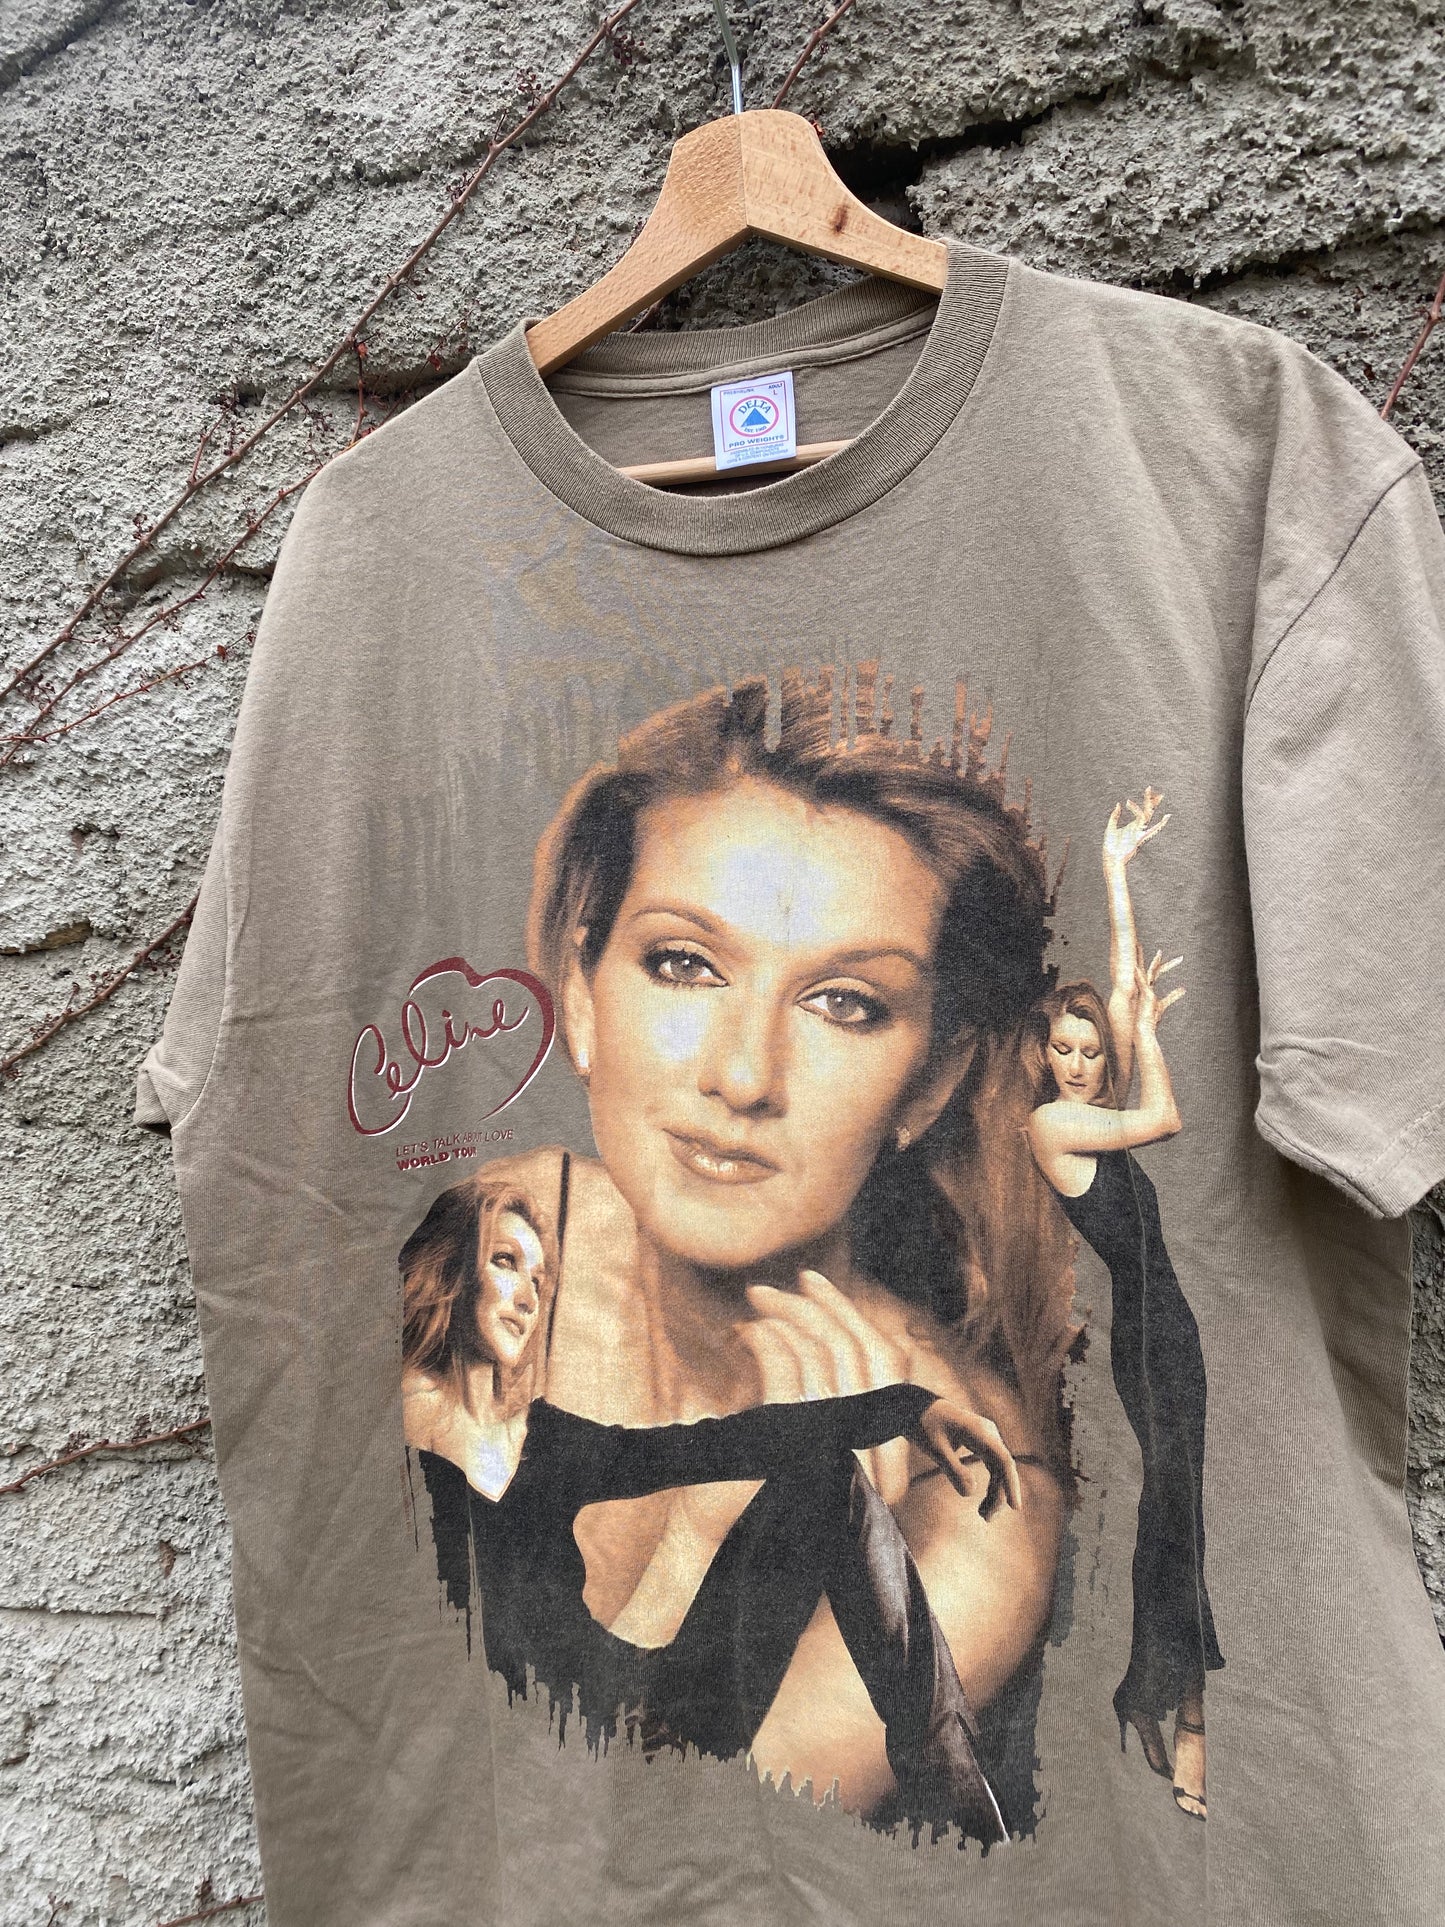 Vintage Celine Dion 1999 "Let's talk about love tour" - t-shirt, size L